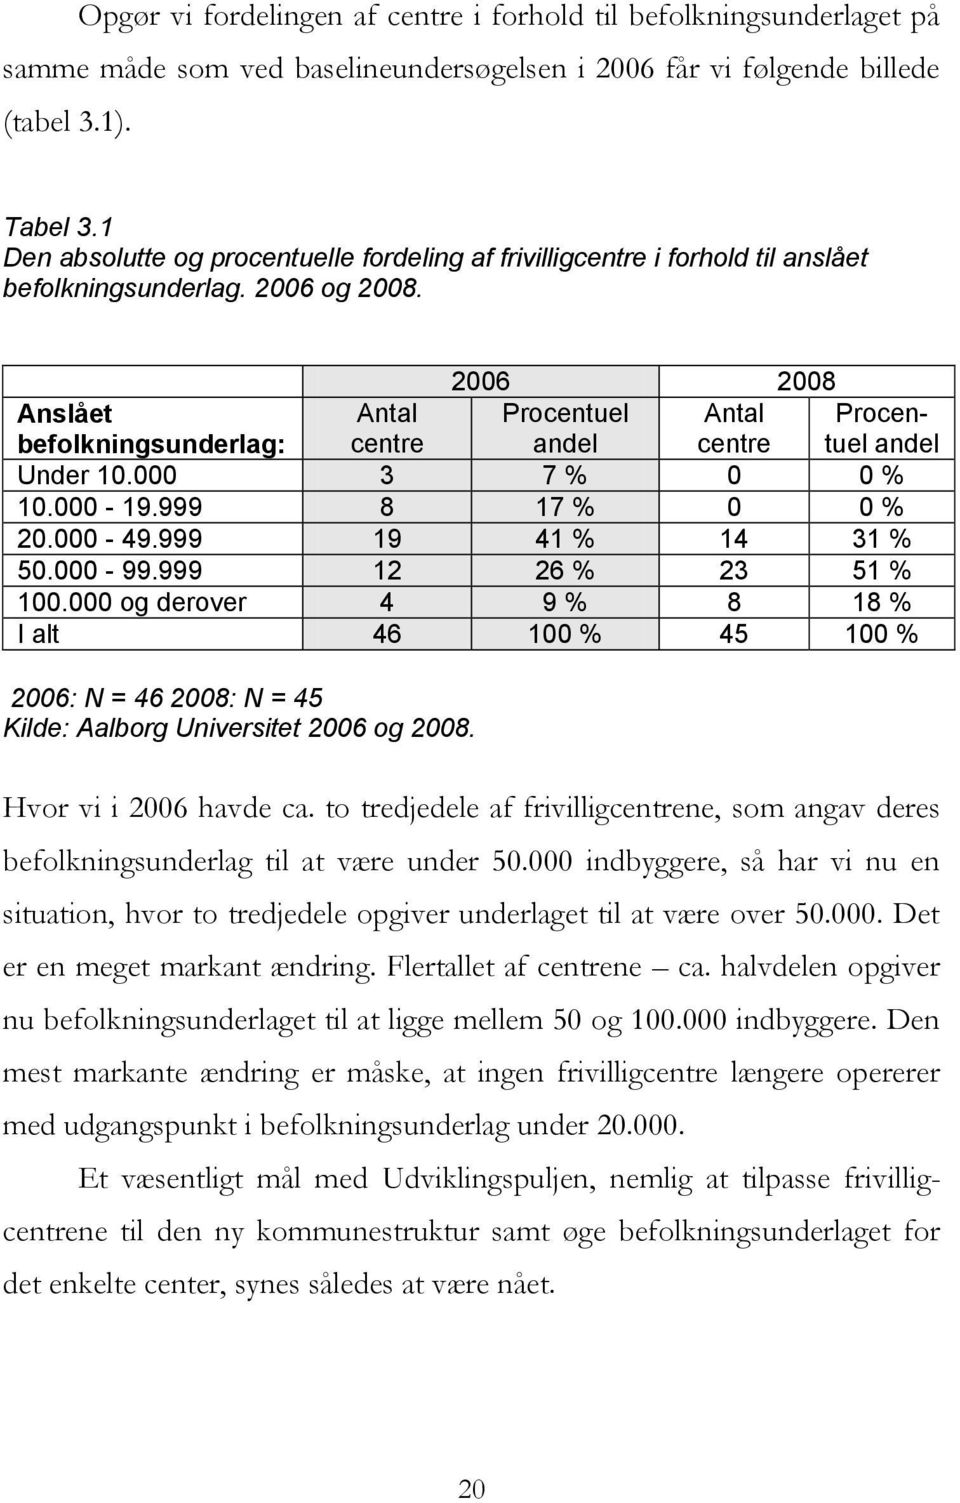 2006 2008 Anslået Antal Procentuel Antal Procentuel befolkningsunderlag: centre andel centre andel Under 10.000 3 7 % 0 0 % 10.000-19.999 8 17 % 0 0 % 20.000-49.999 19 41 % 14 31 % 50.000-99.